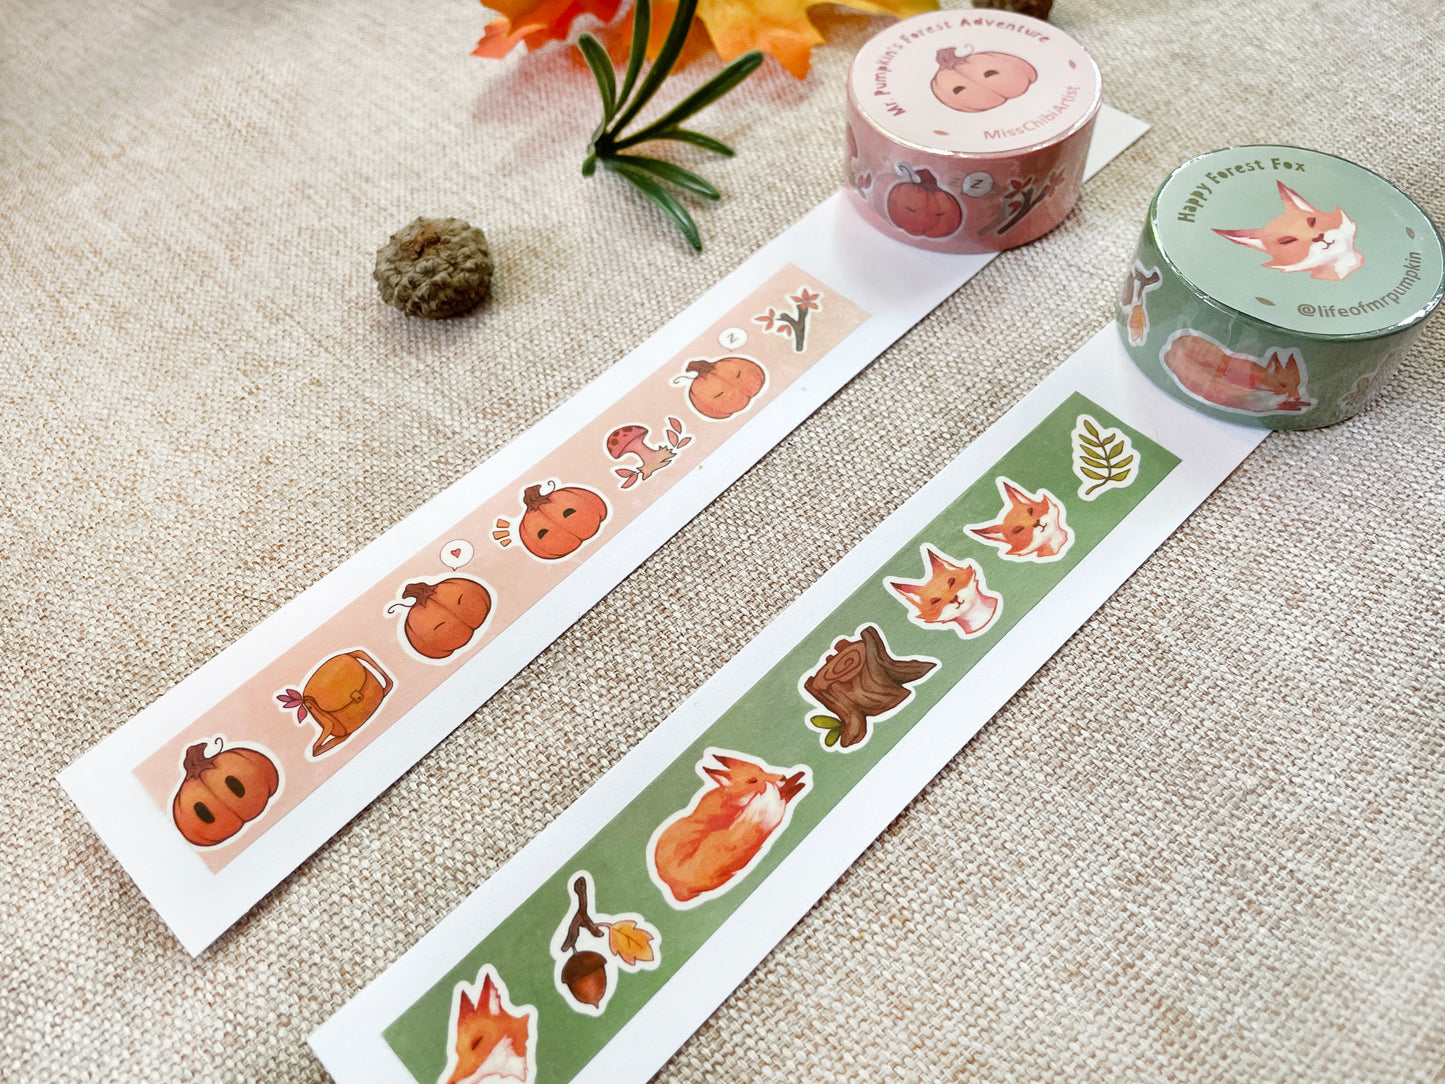 Autumn Aesthetic Washi Tapes